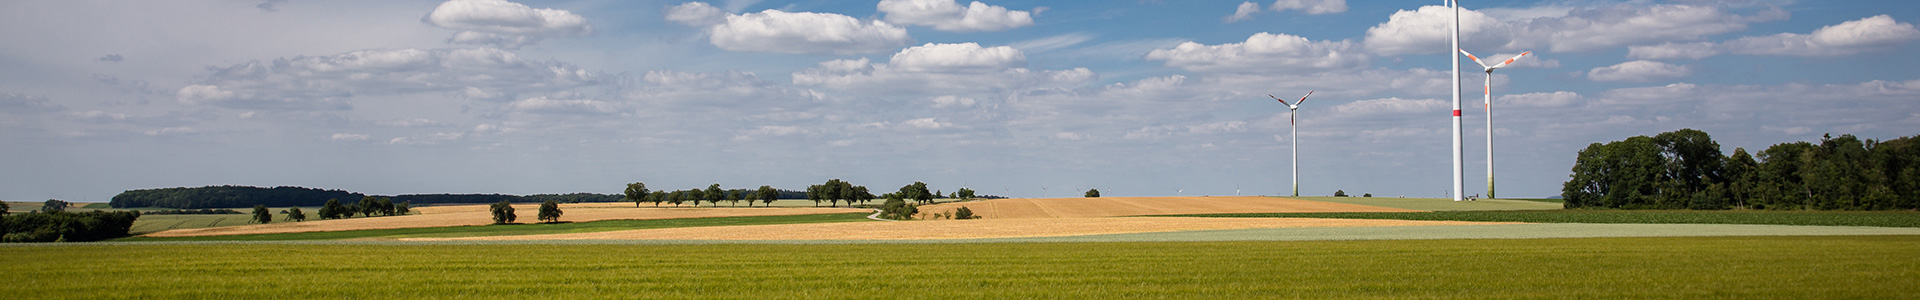 Panoramaaufnahme eines unbebauten Feldes im Landkreis Ansbach